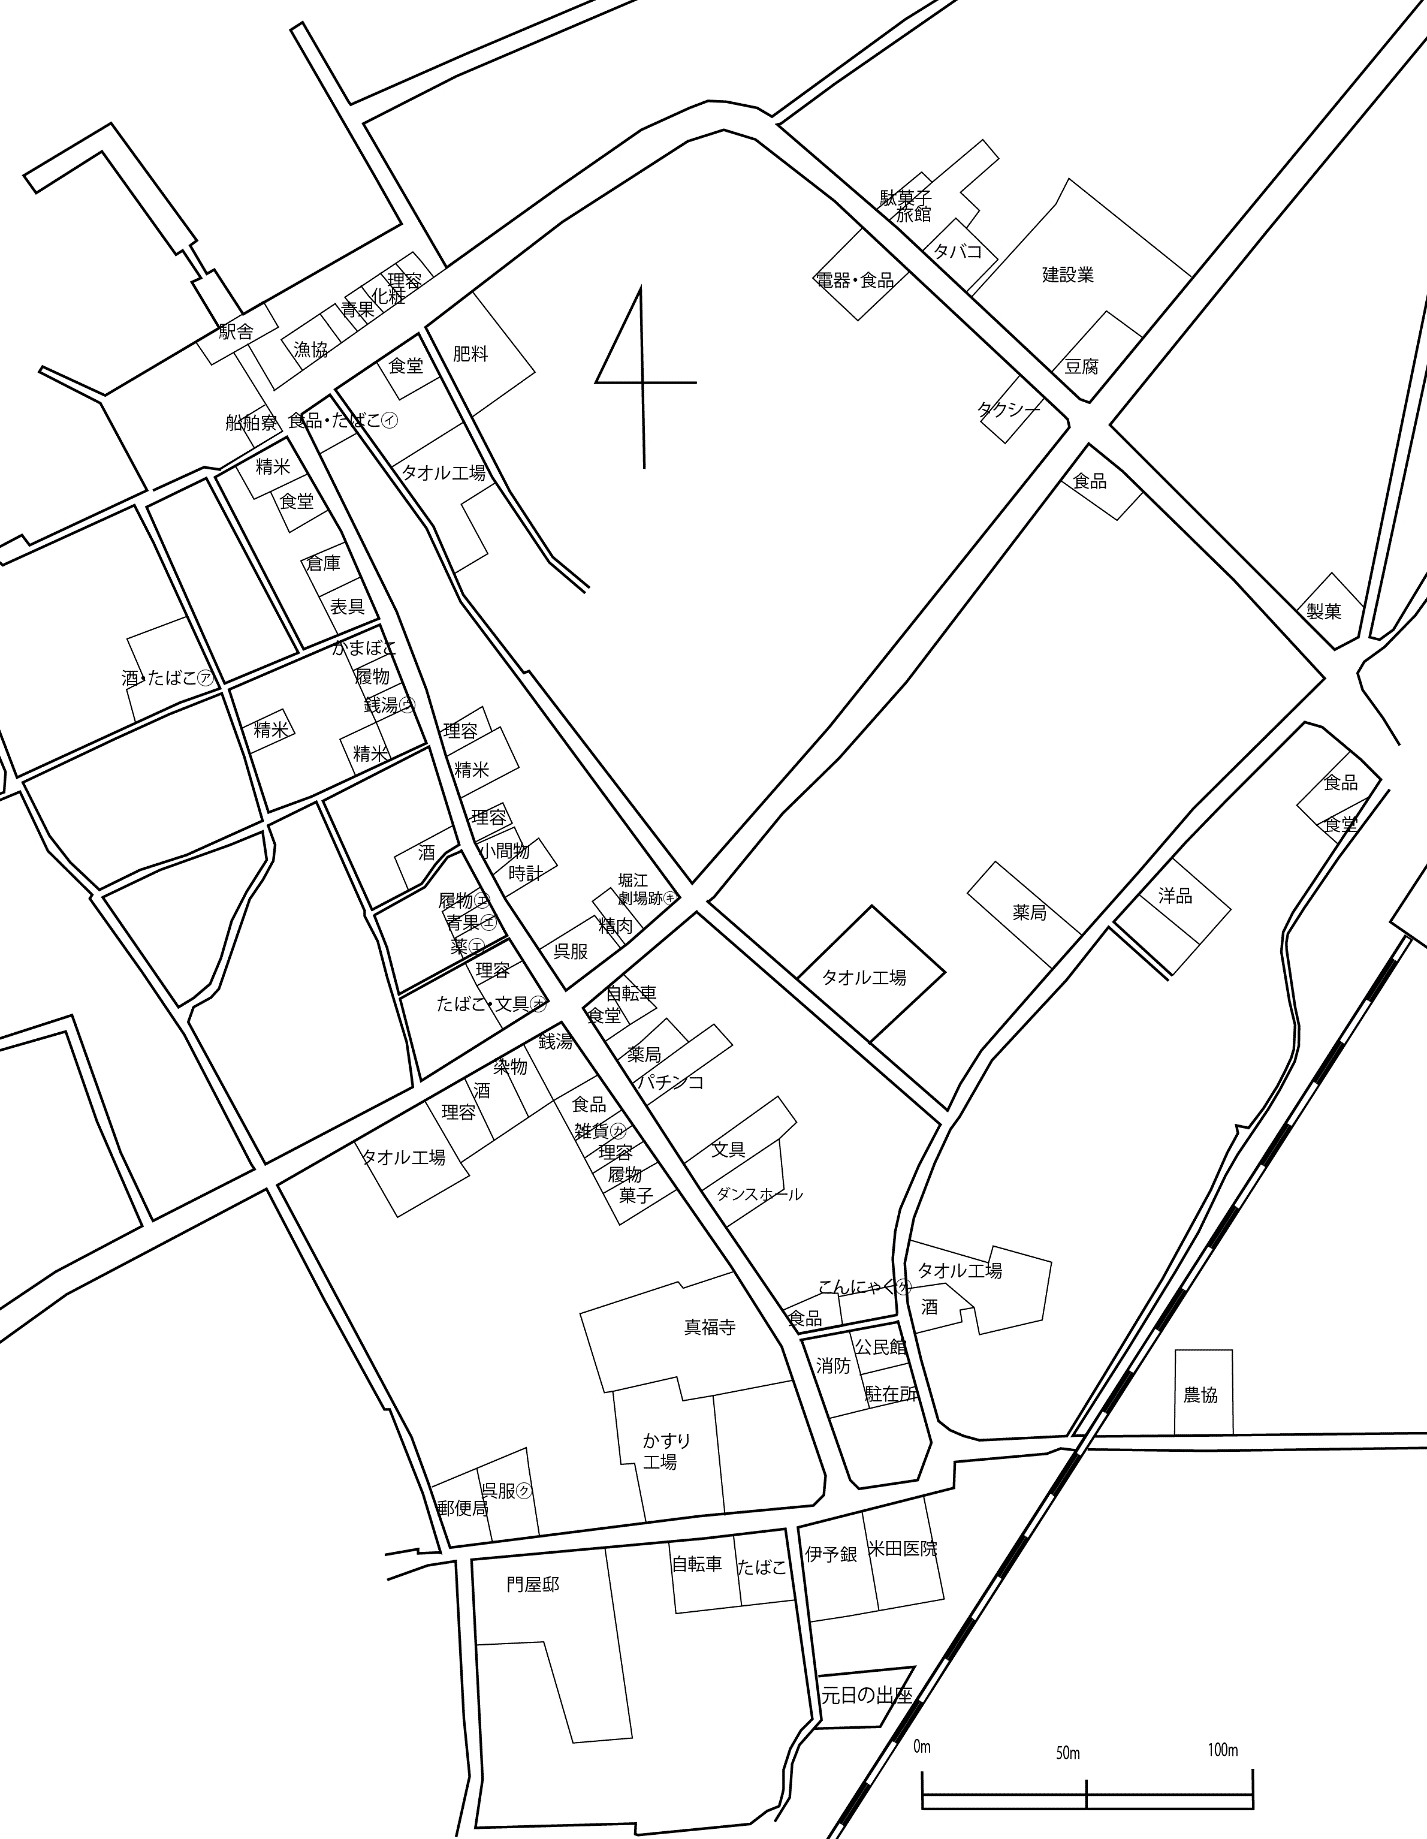 図表1-2-2　堀江の町並み